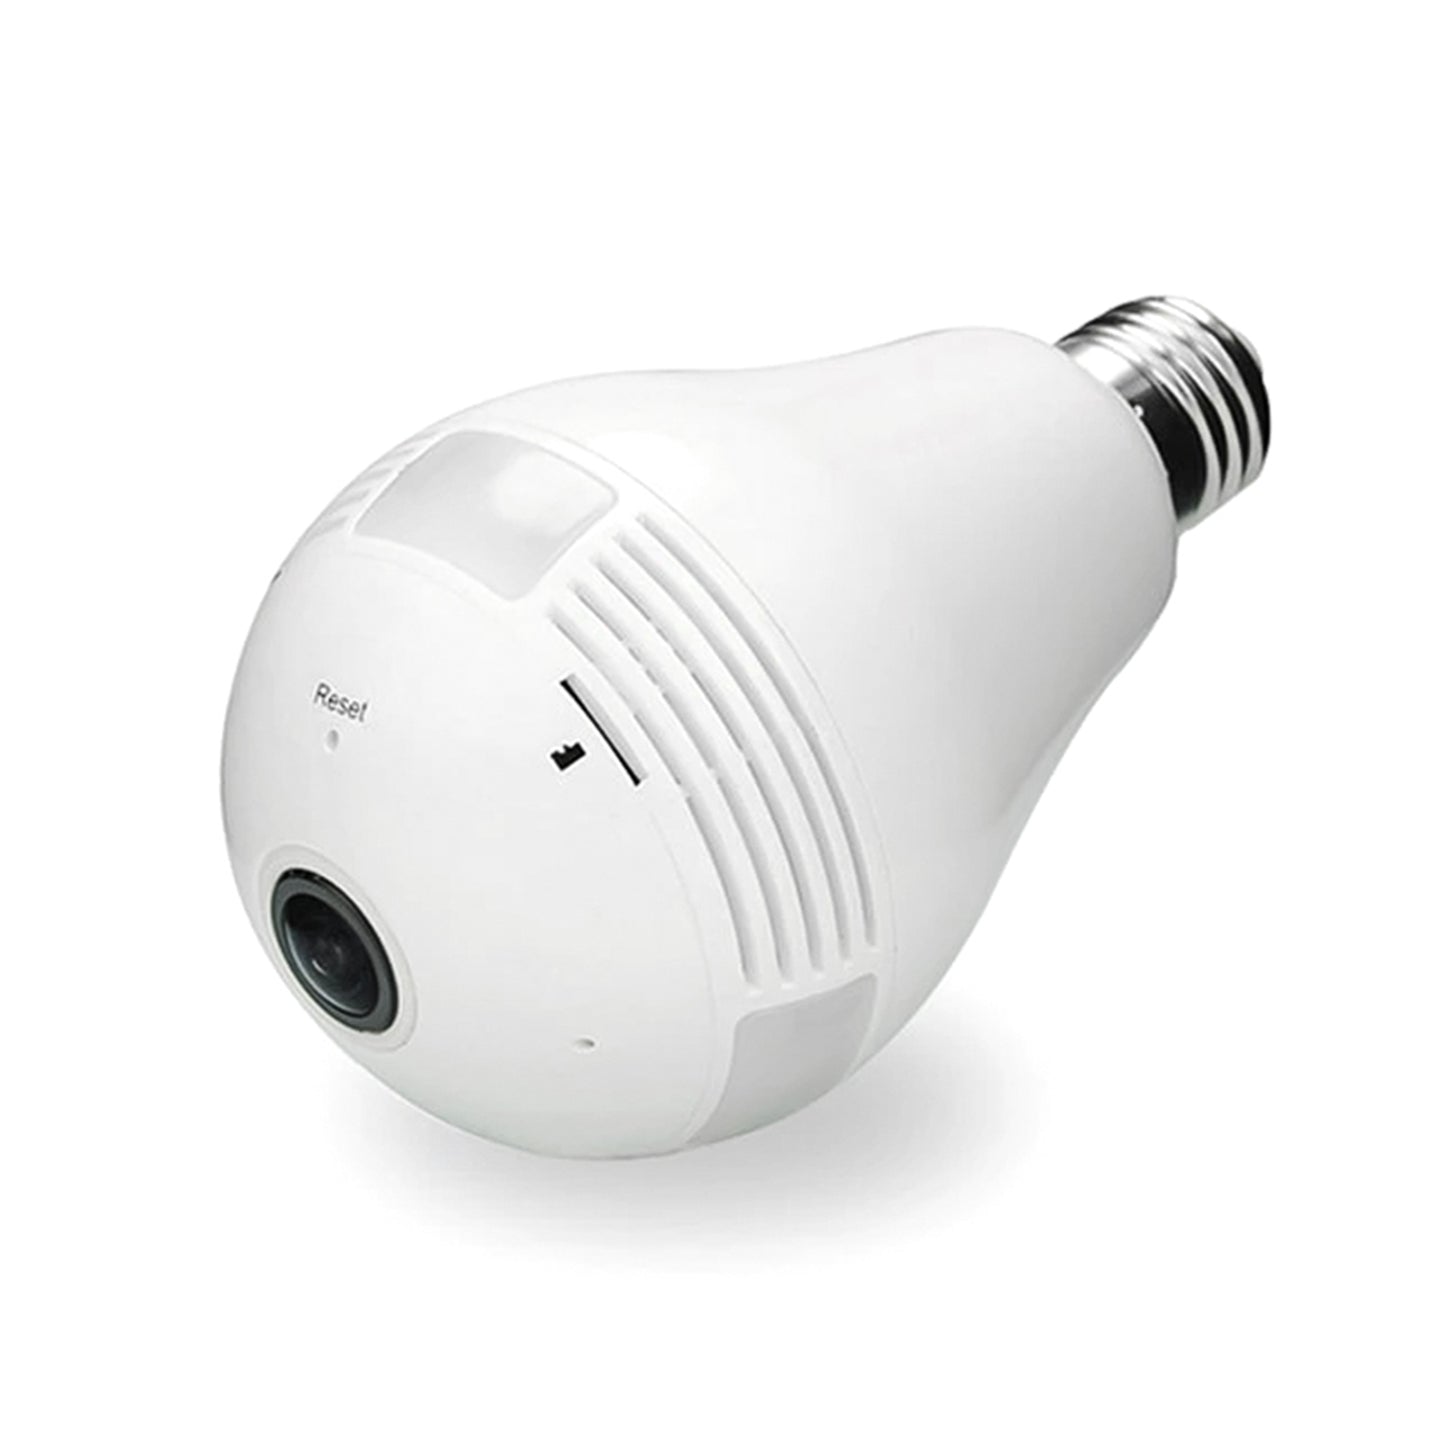 GBX telecamera spia, telecamera Wi-Fi 960p 1,3 Mpx panoramica a 360° con visione notturna e rilevatore di movimento, lampadina telecamera